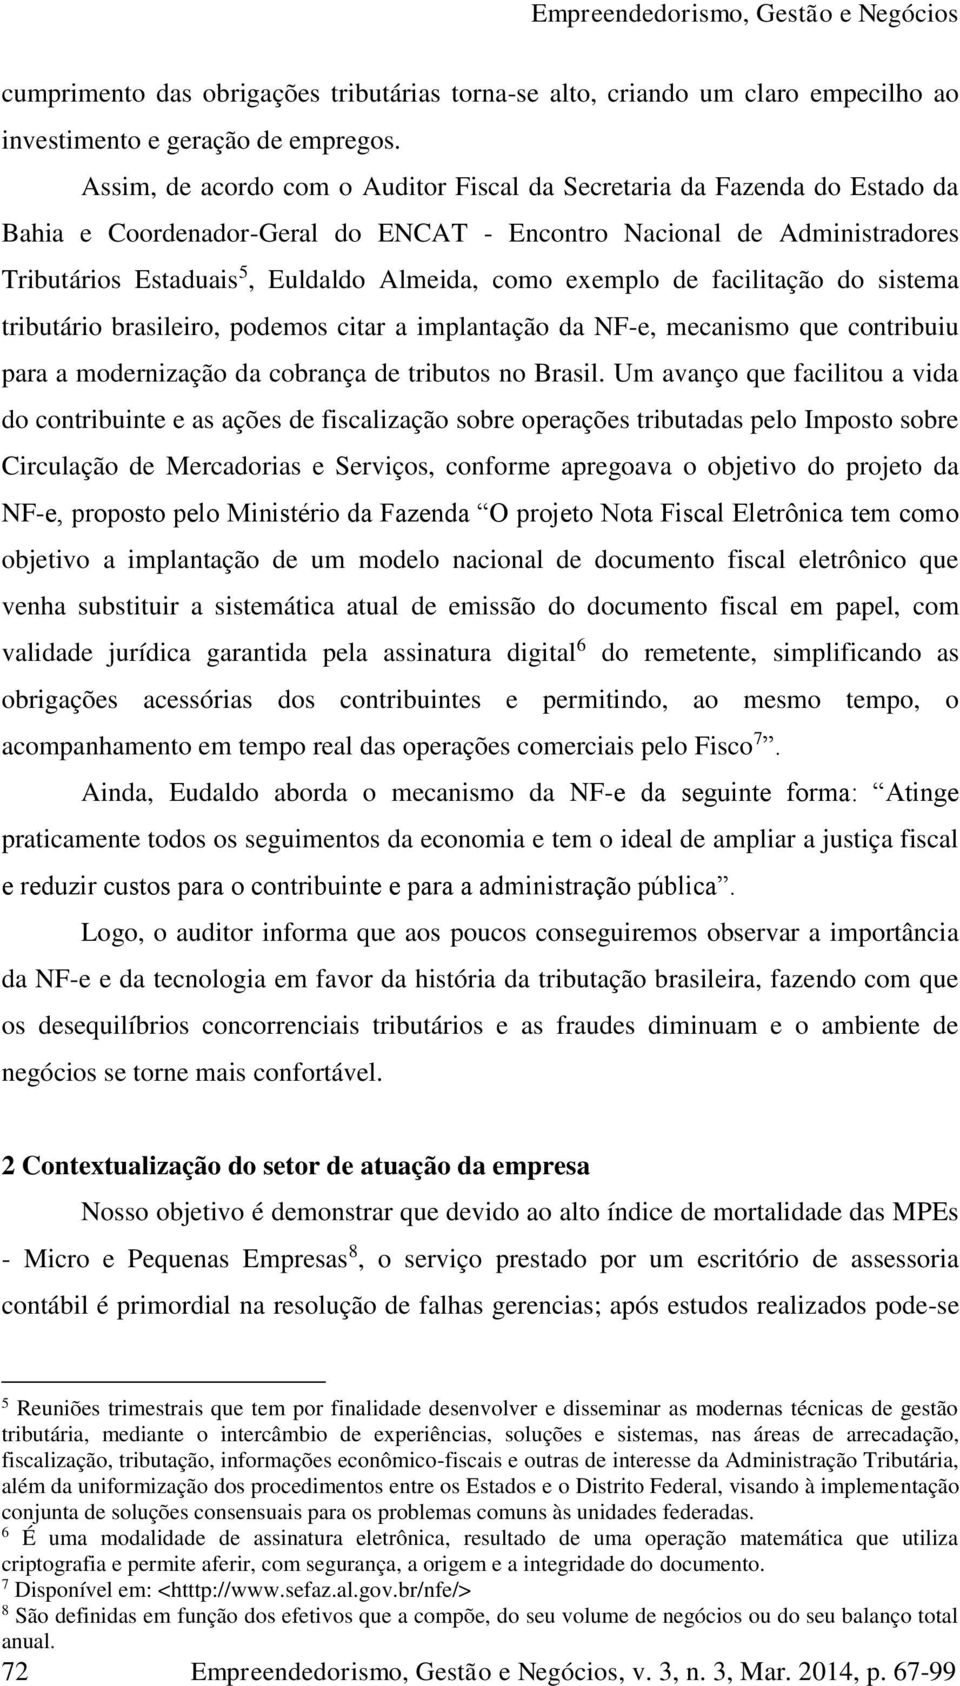 exemplo de facilitação do sistema tributário brasileiro, podemos citar a implantação da NF-e, mecanismo que contribuiu para a modernização da cobrança de tributos no Brasil.